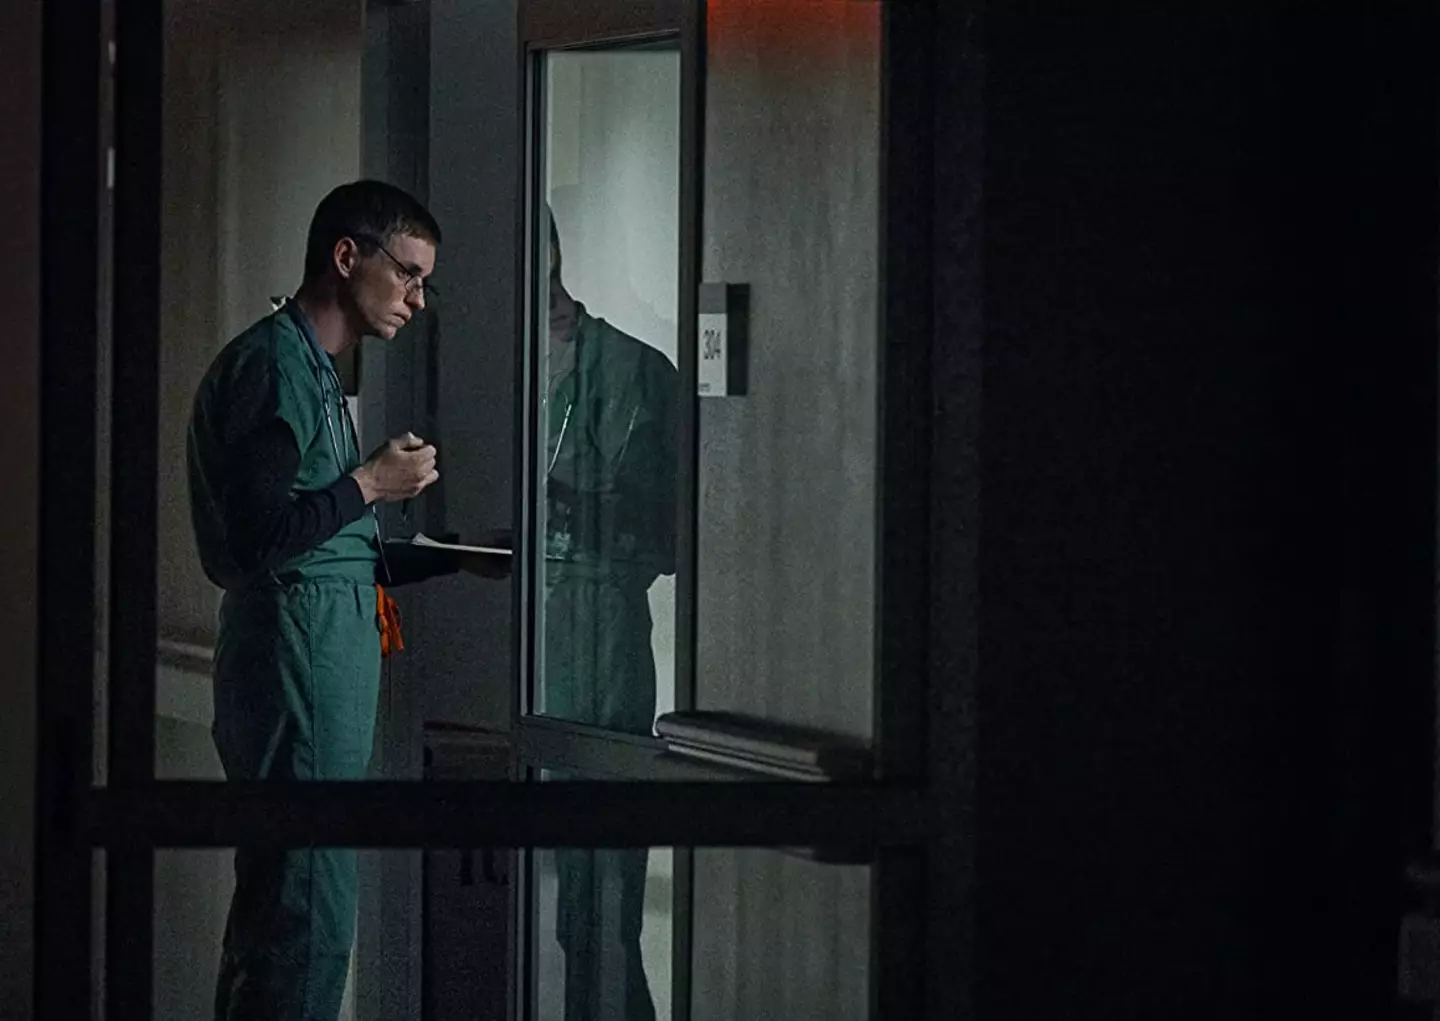 Eddie Redmayne plays Charles Cullen who killed up to 40 patients in his nursing career.